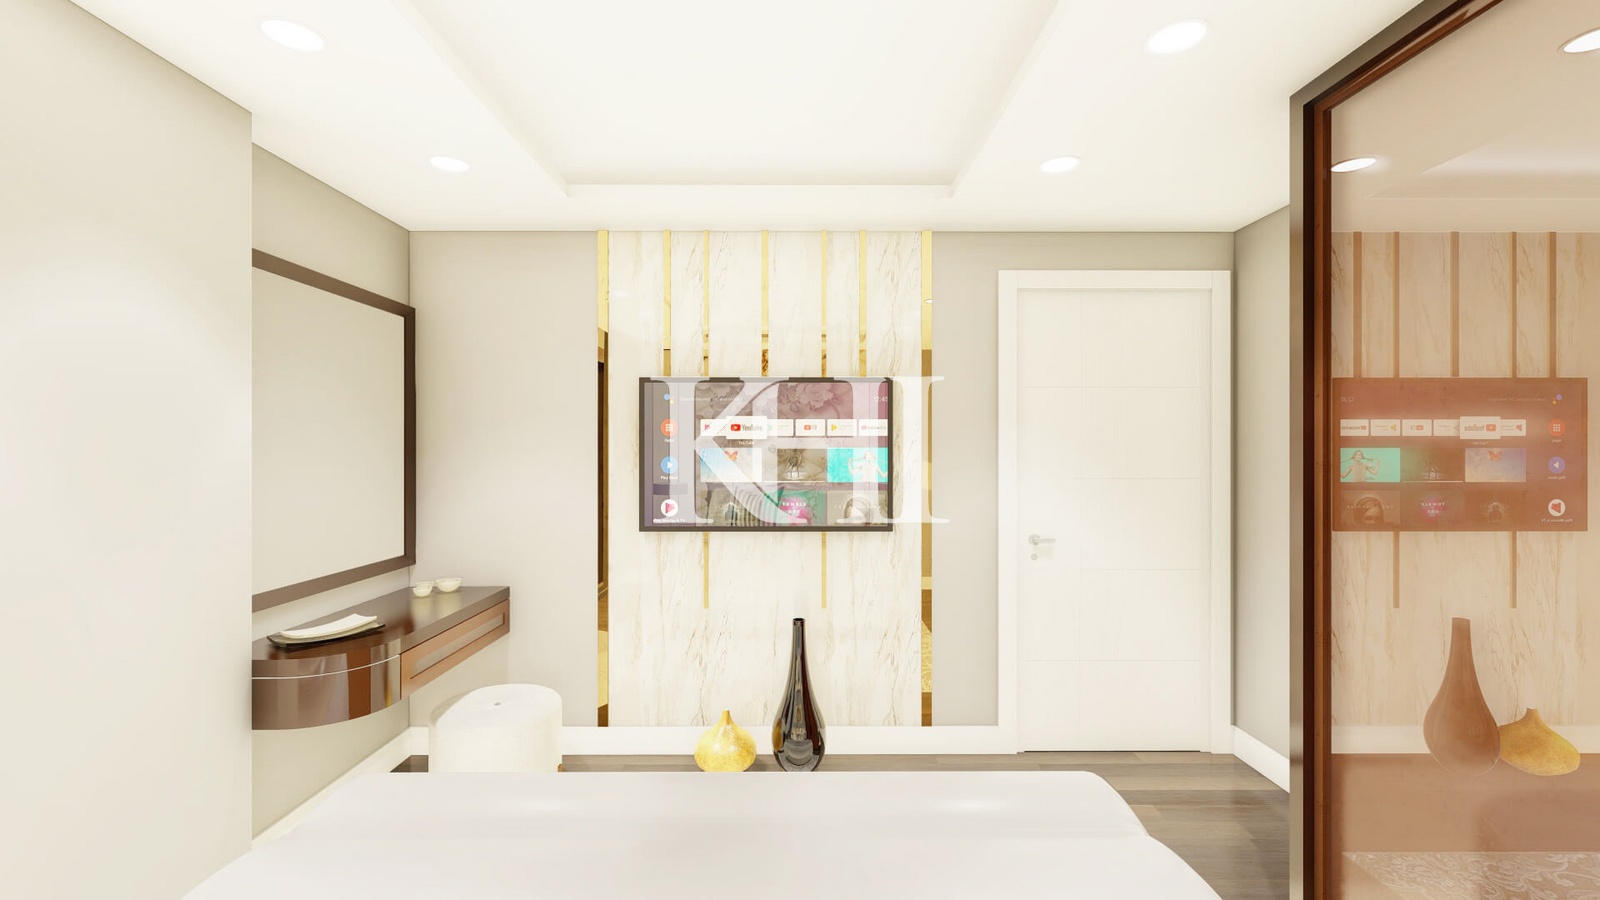 Premium Hotel Concept Apartments Slide Image 18